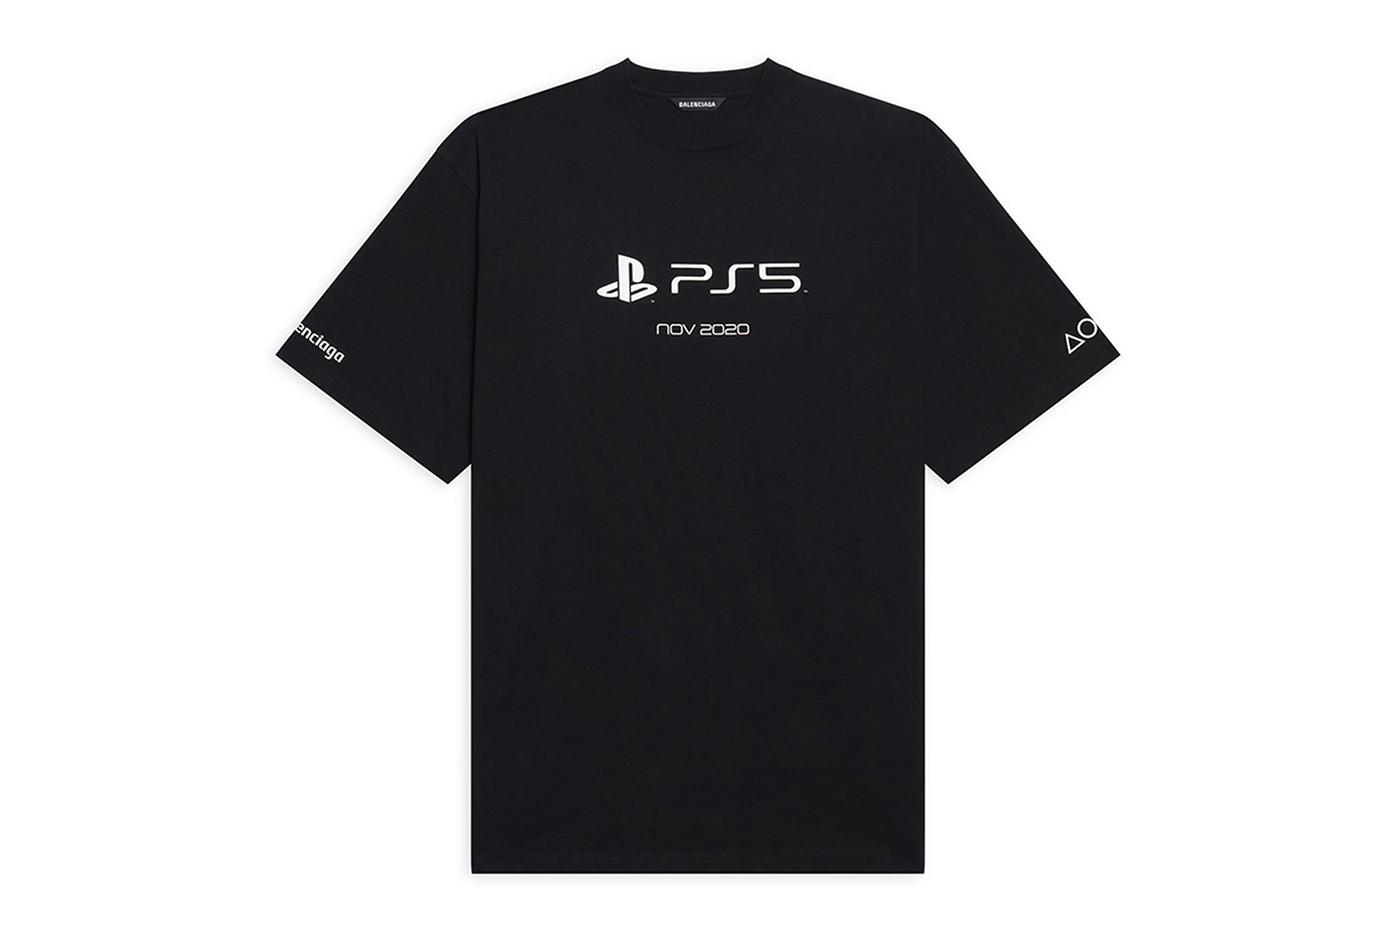 Chiếc áo gồm logo của Balenciaga ở tay áo, biểu tượng PS5 và Nov 2020, tháng ra mắt Sony PlayStation 5.